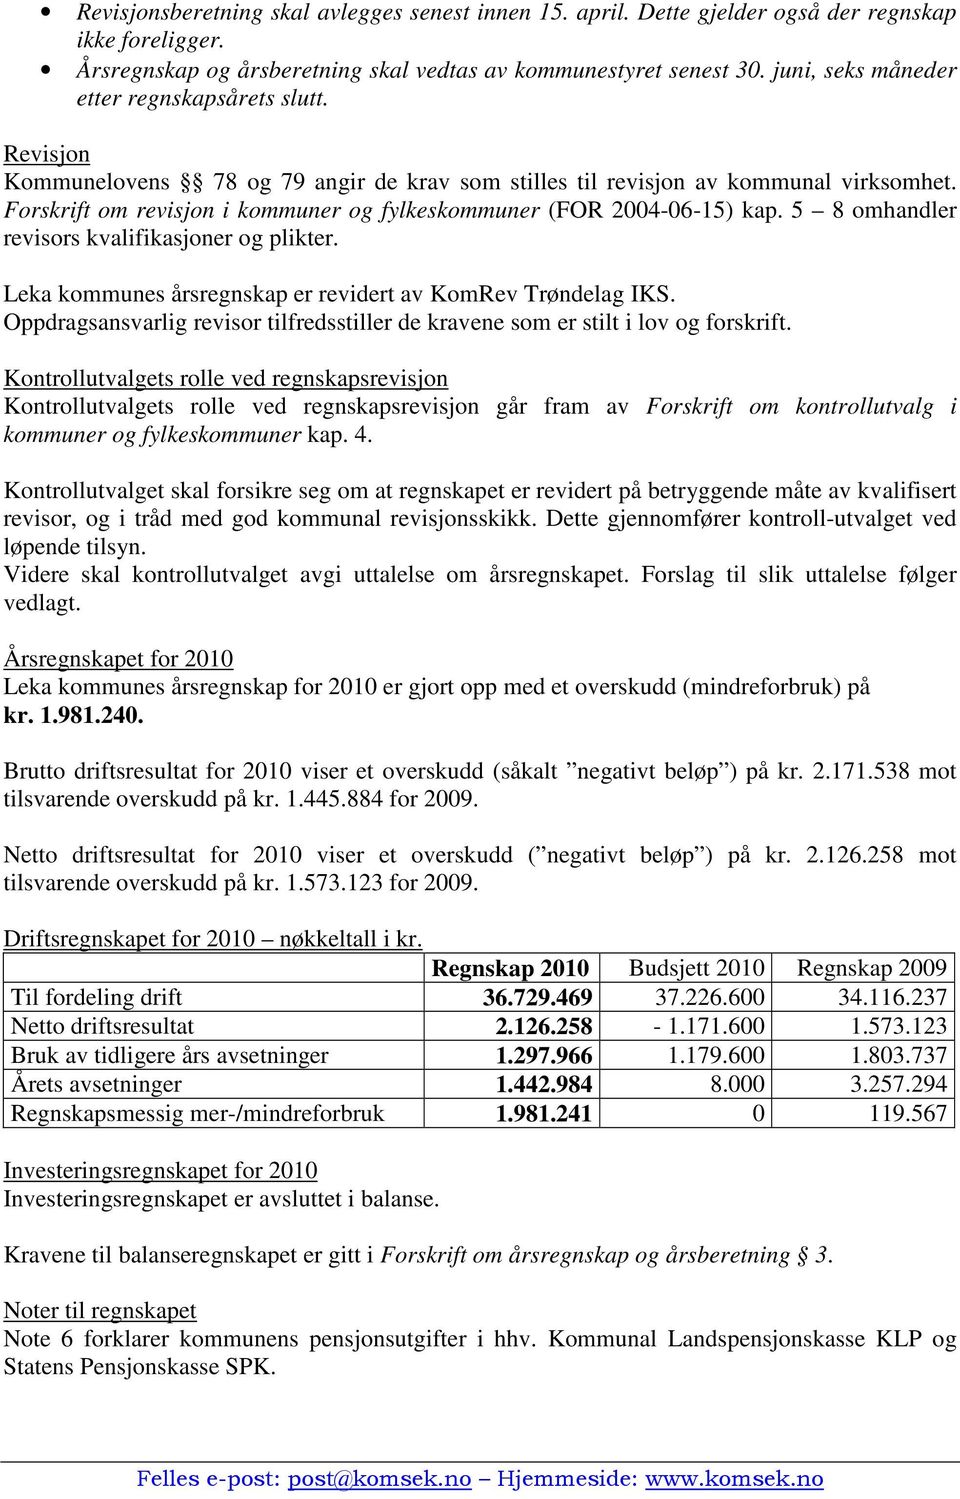 Forskrift om revisjon i kommuner og fylkeskommuner (FOR 2004-06-15) kap. 5 8 omhandler revisors kvalifikasjoner og plikter. Leka kommunes årsregnskap er revidert av KomRev Trøndelag IKS.